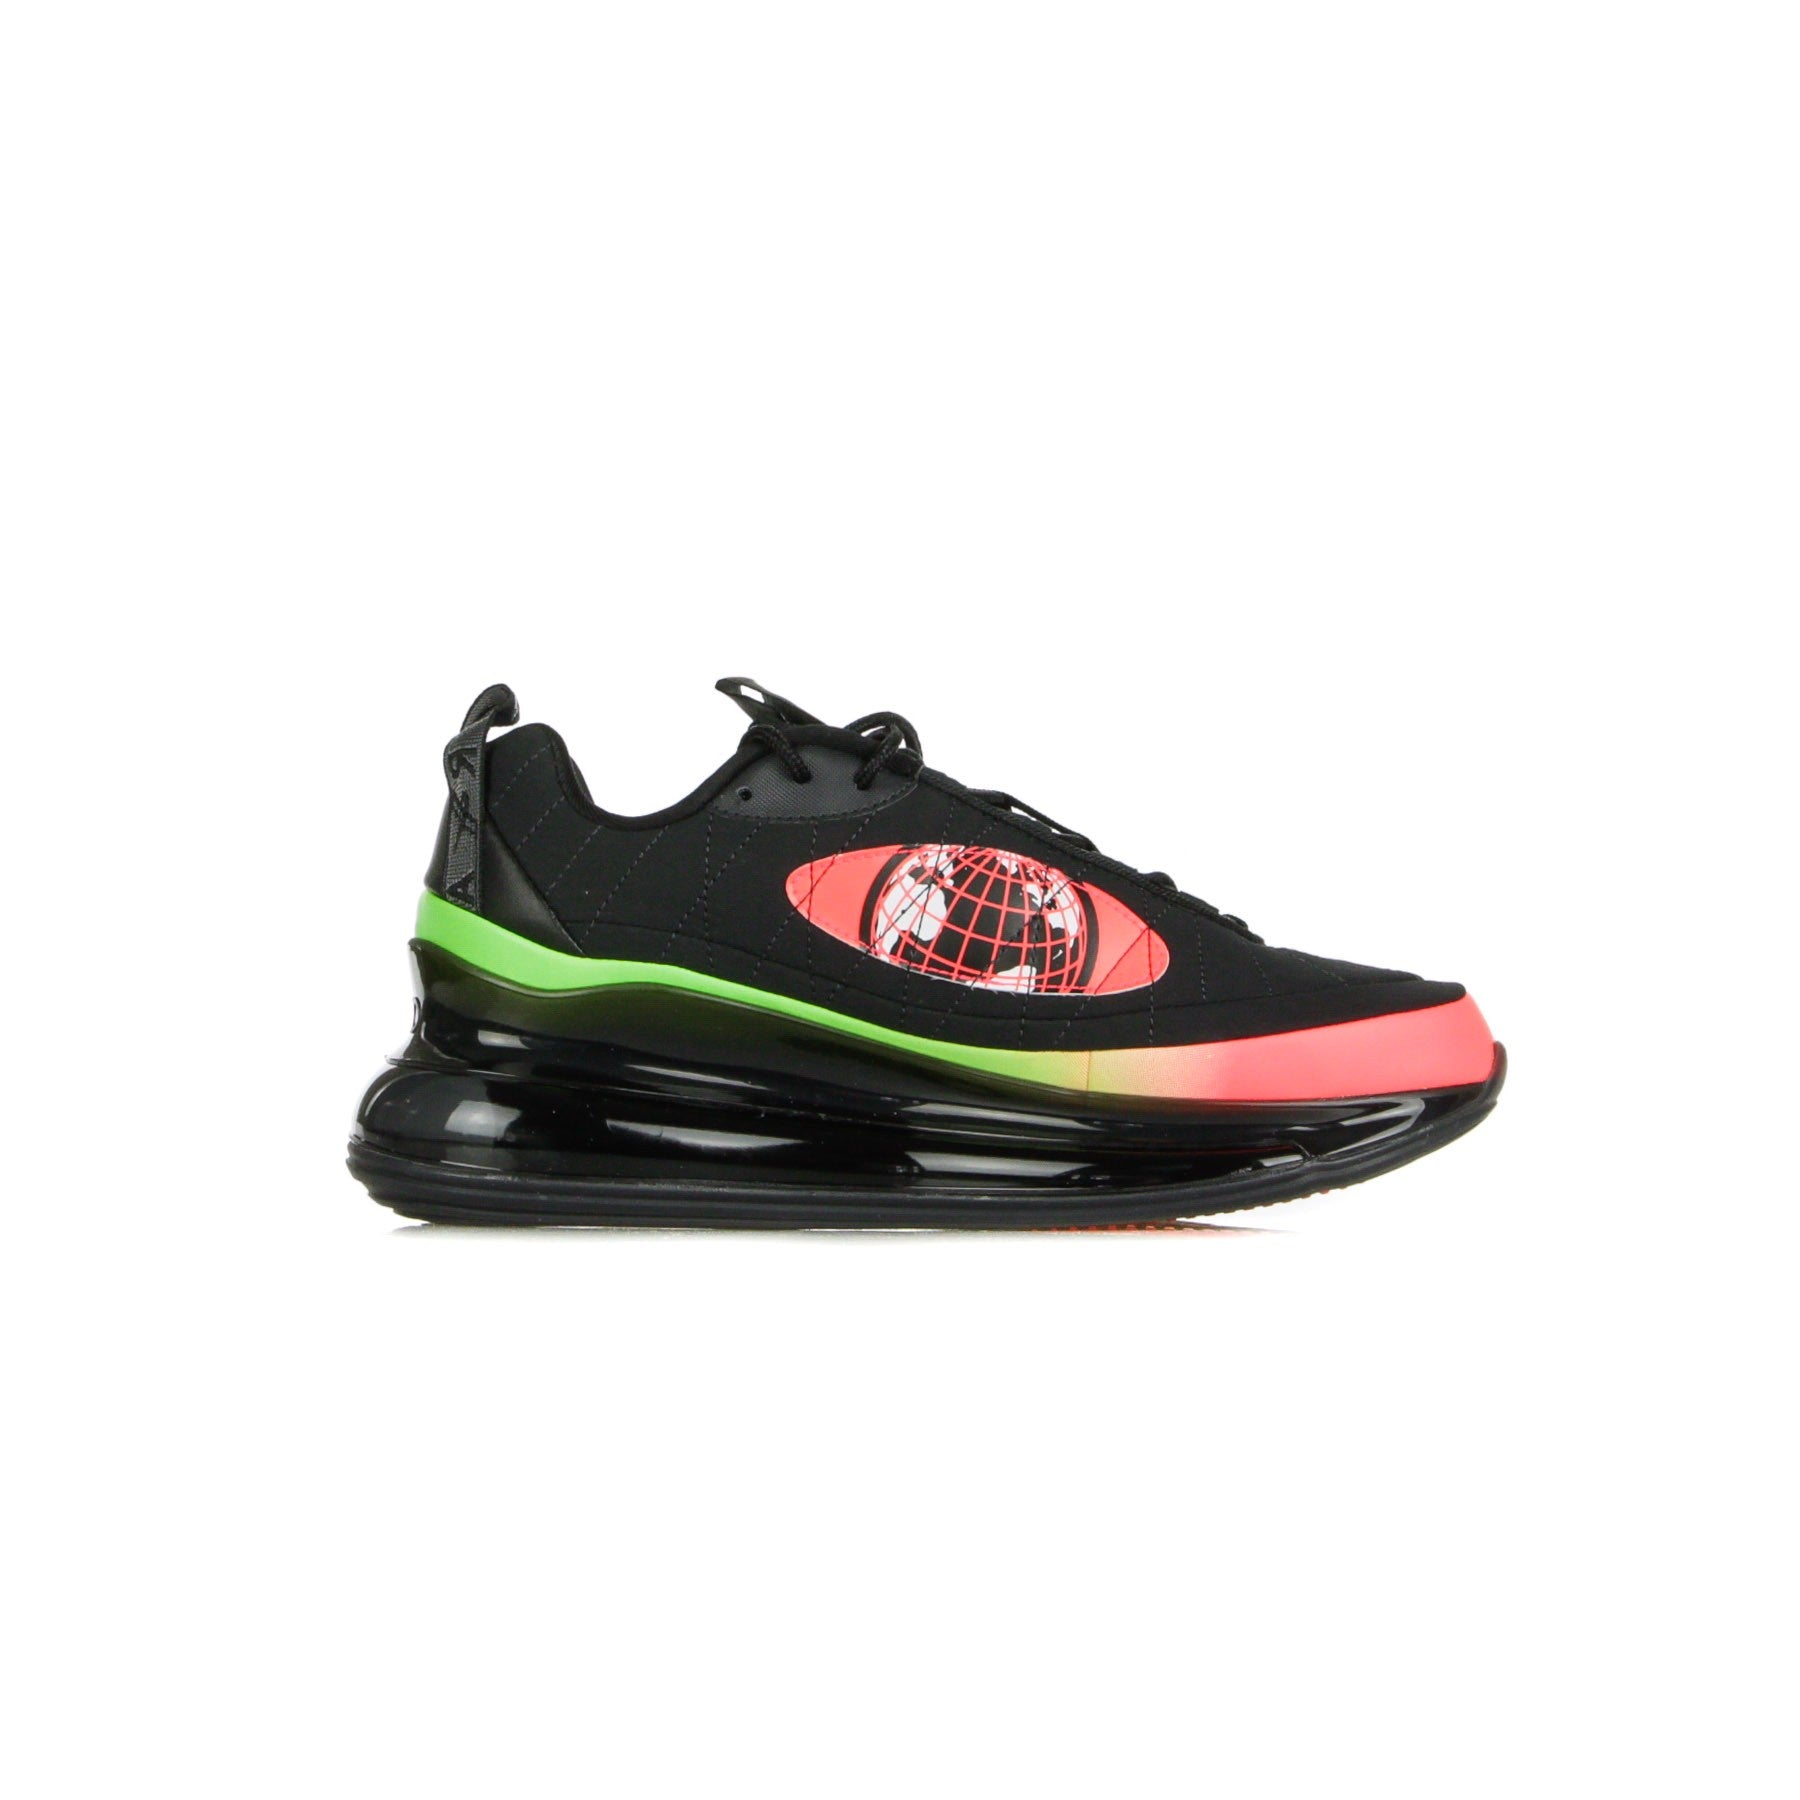 Low Men's Shoe Mx-720-818 Ww Black/white/green Strike/flash Crimson